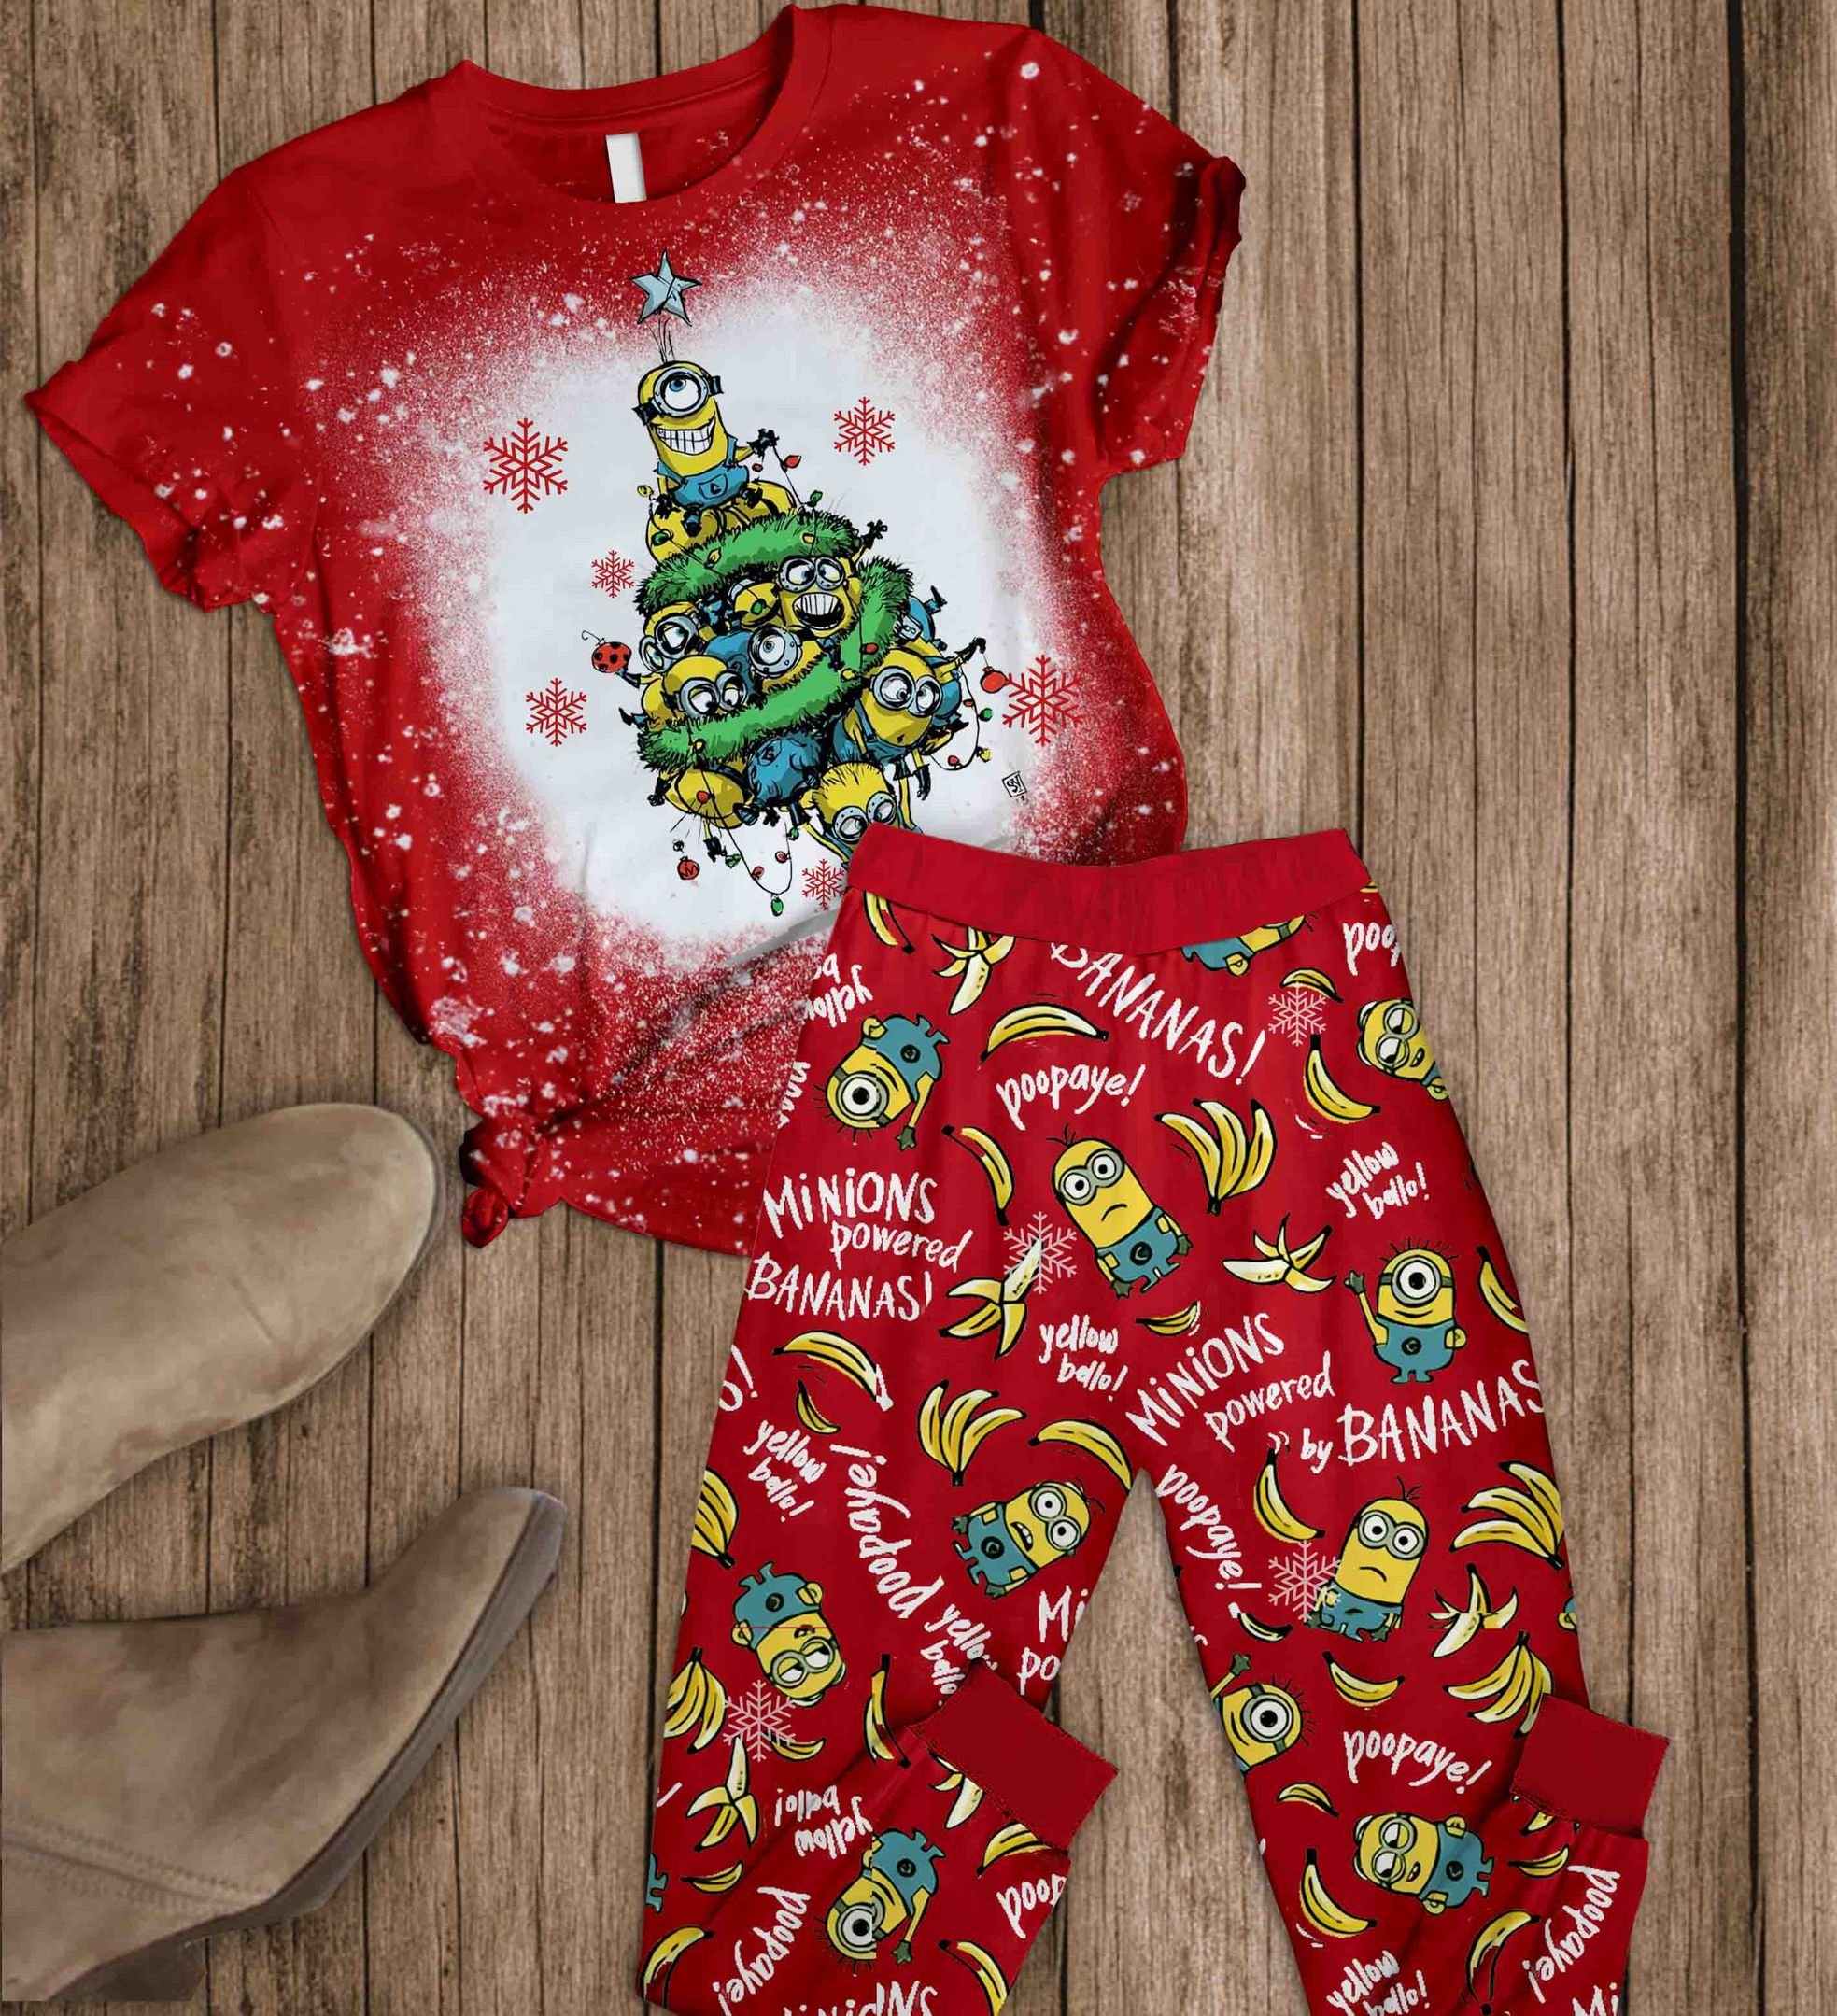 Minions_powered_bananas_Christmas_Tree_Pajamas_Set